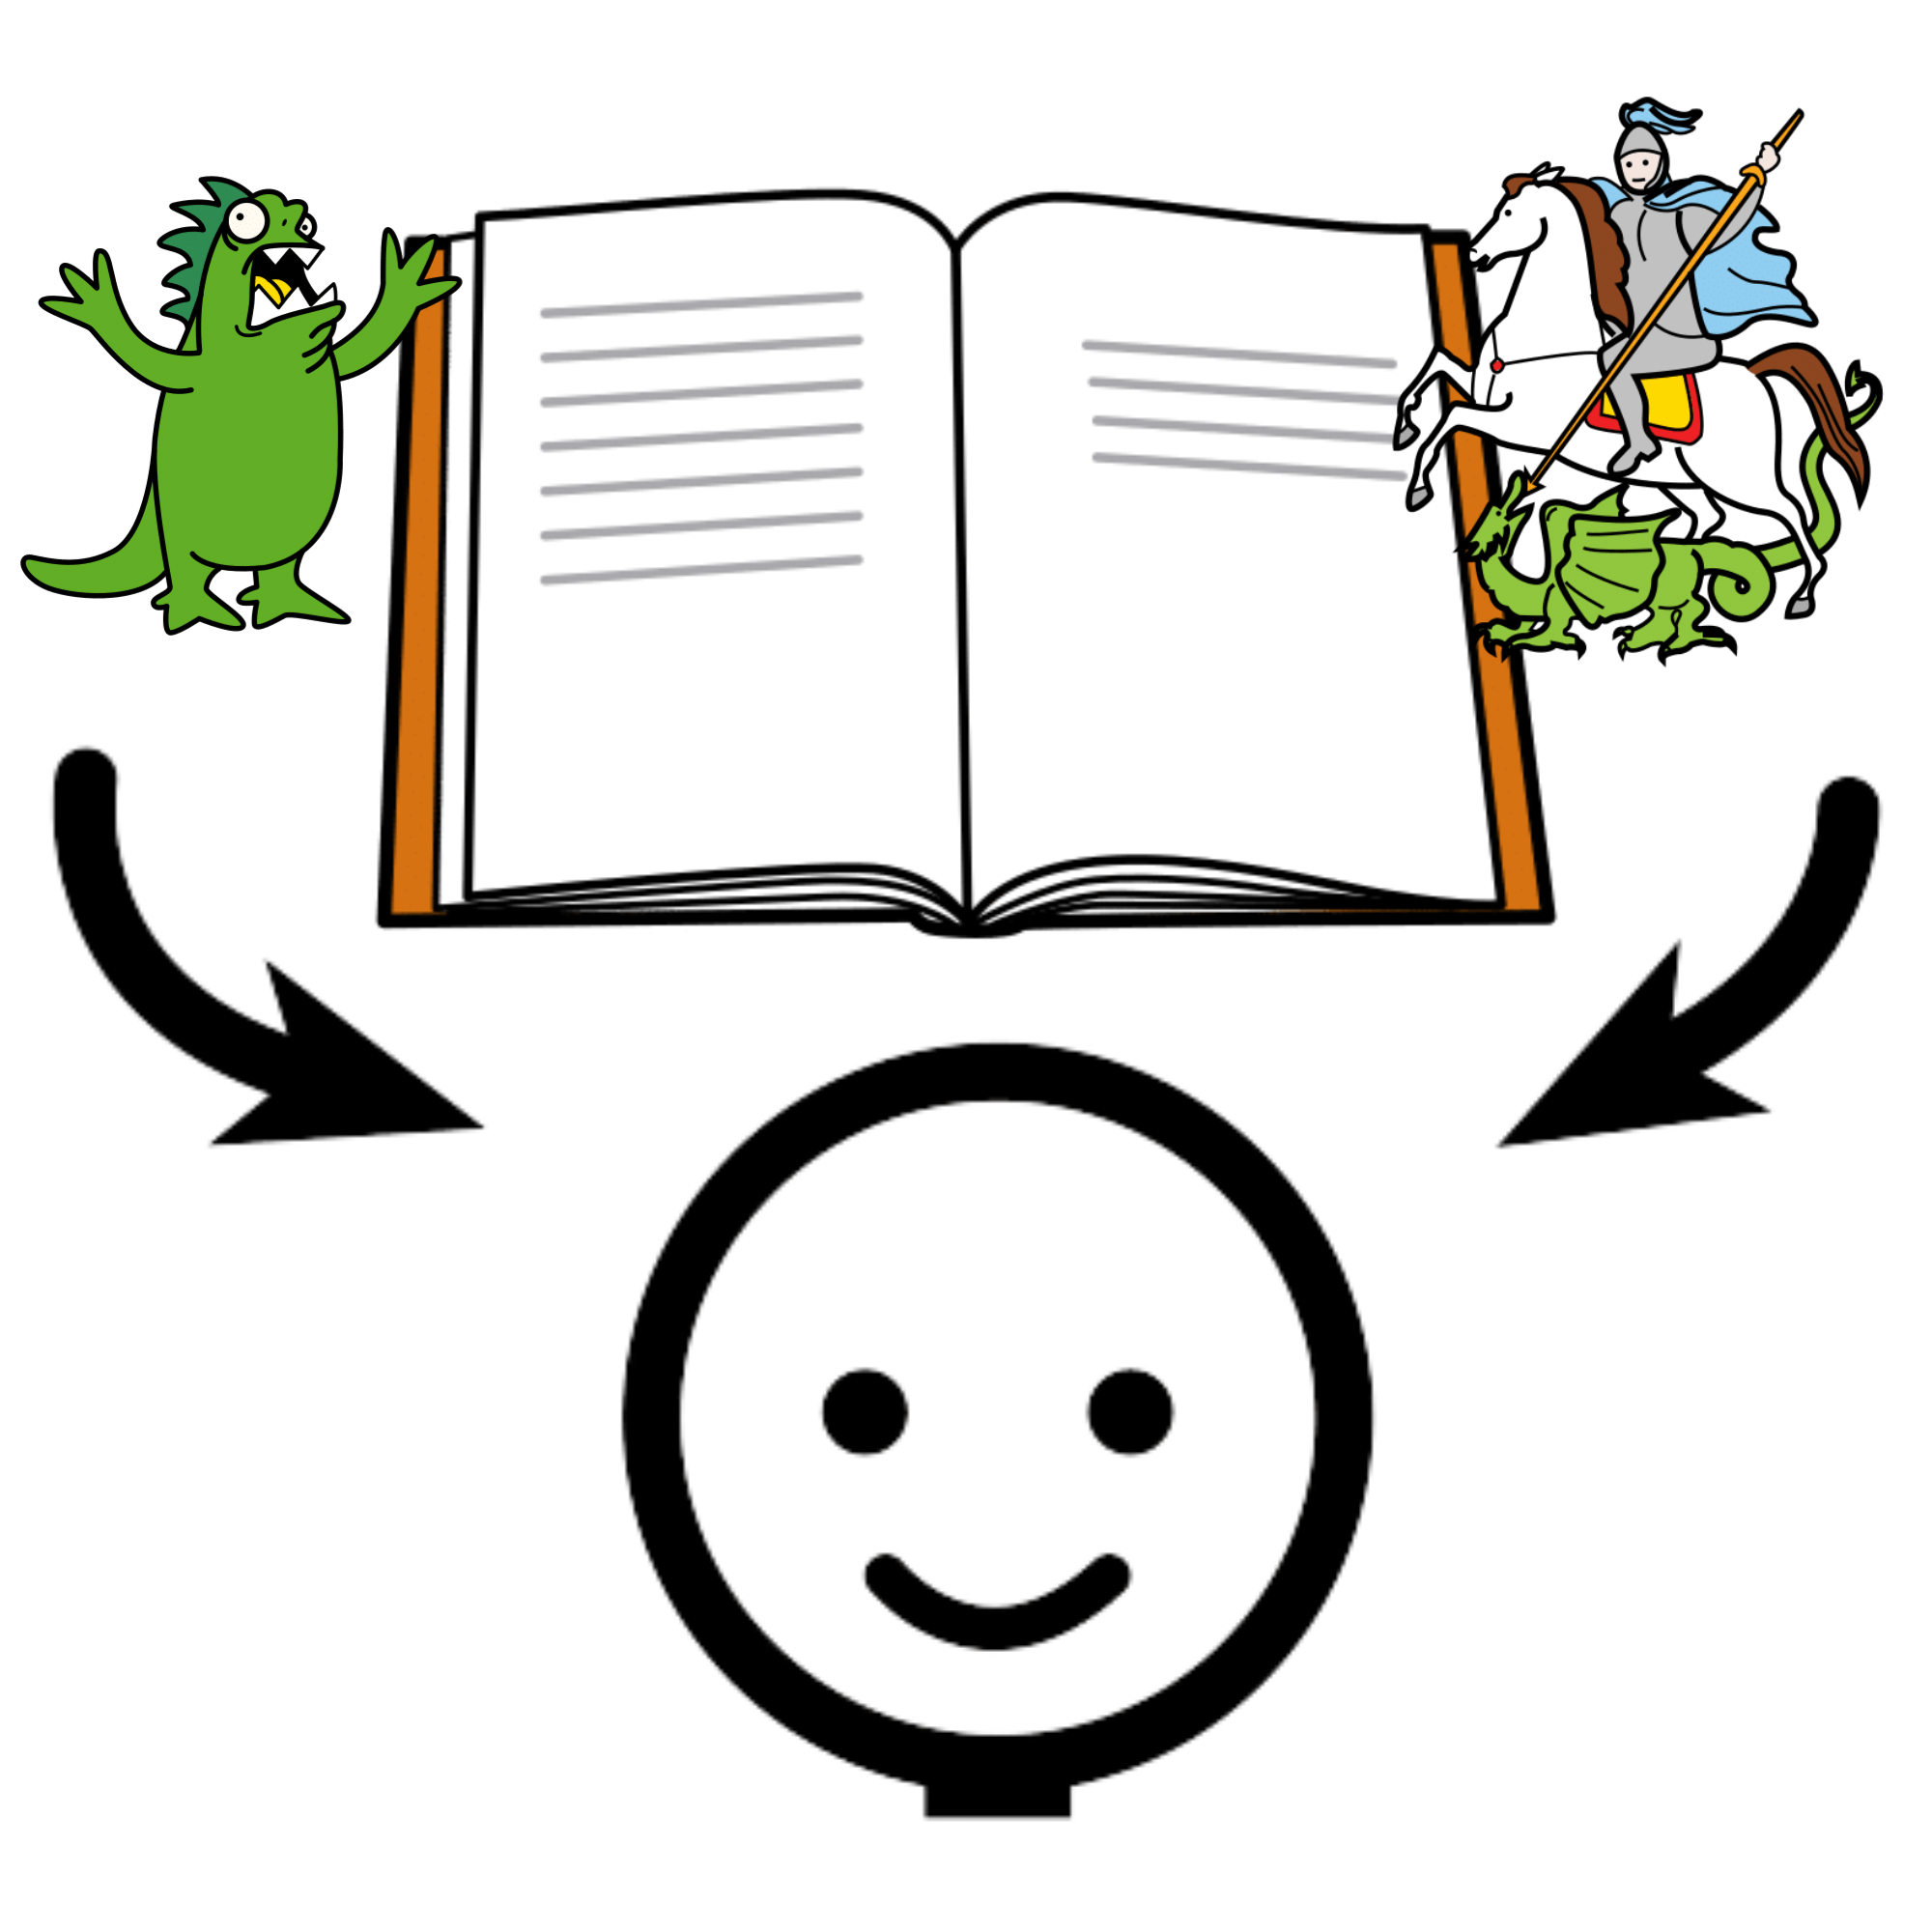 Pictograma de un libro con un monstruo a un lado y al otro un caballero luchando con un dragón, del libro salen dos flechas que llegan hasta la cabeza de una persona.